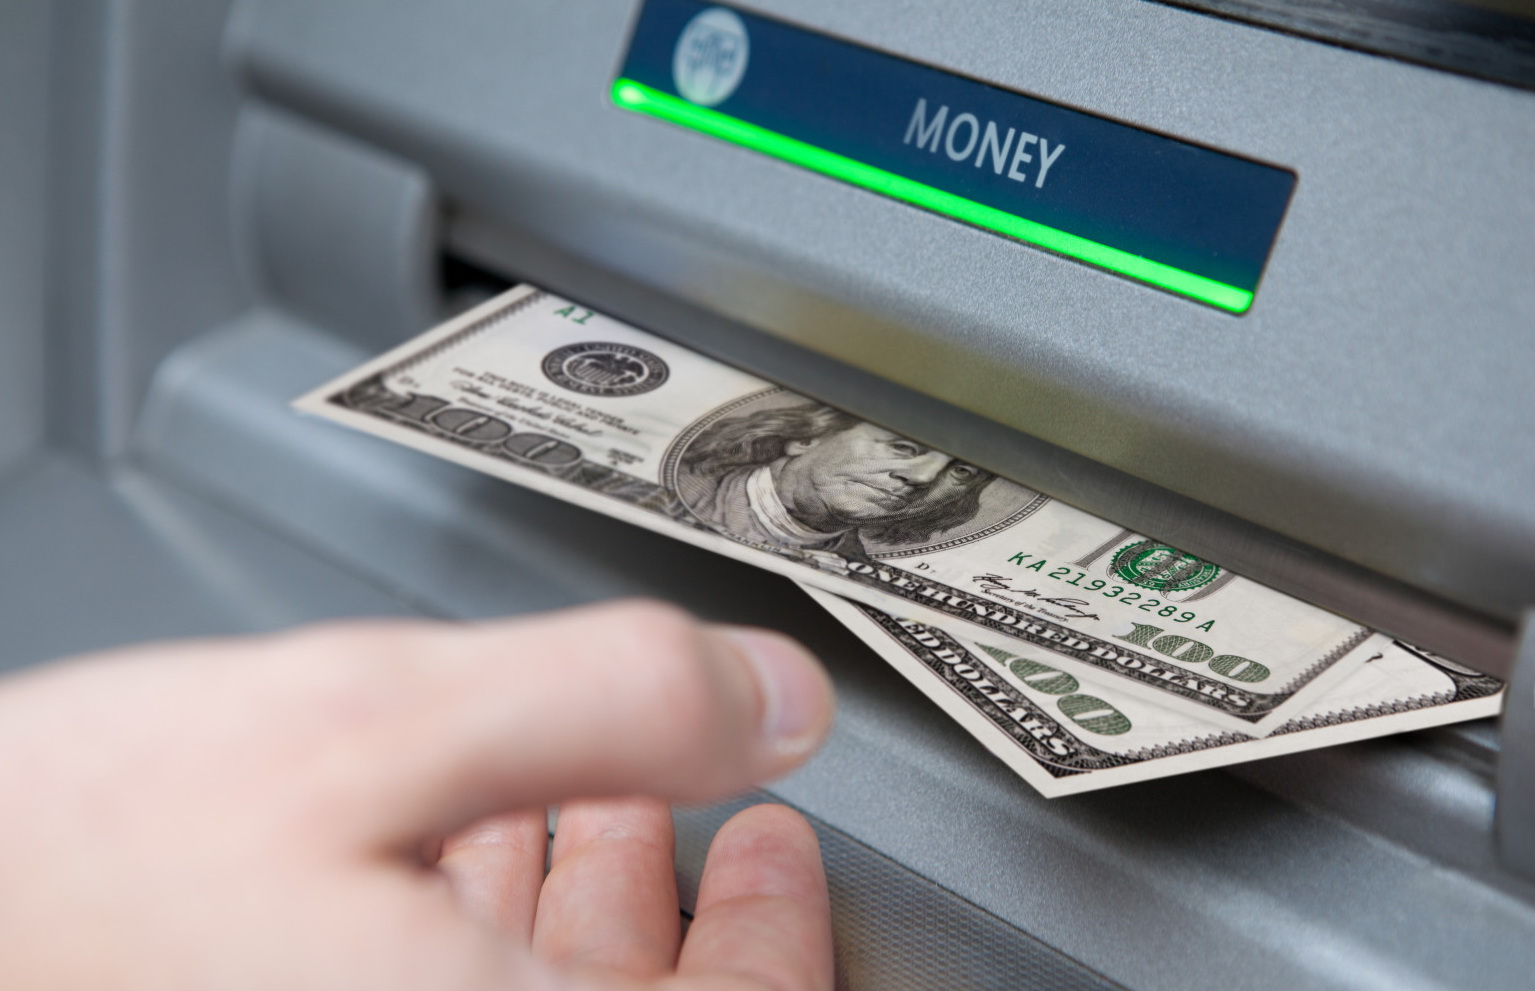 Приват, Ощад и другие банки ввели новые правила снятия наличных денег